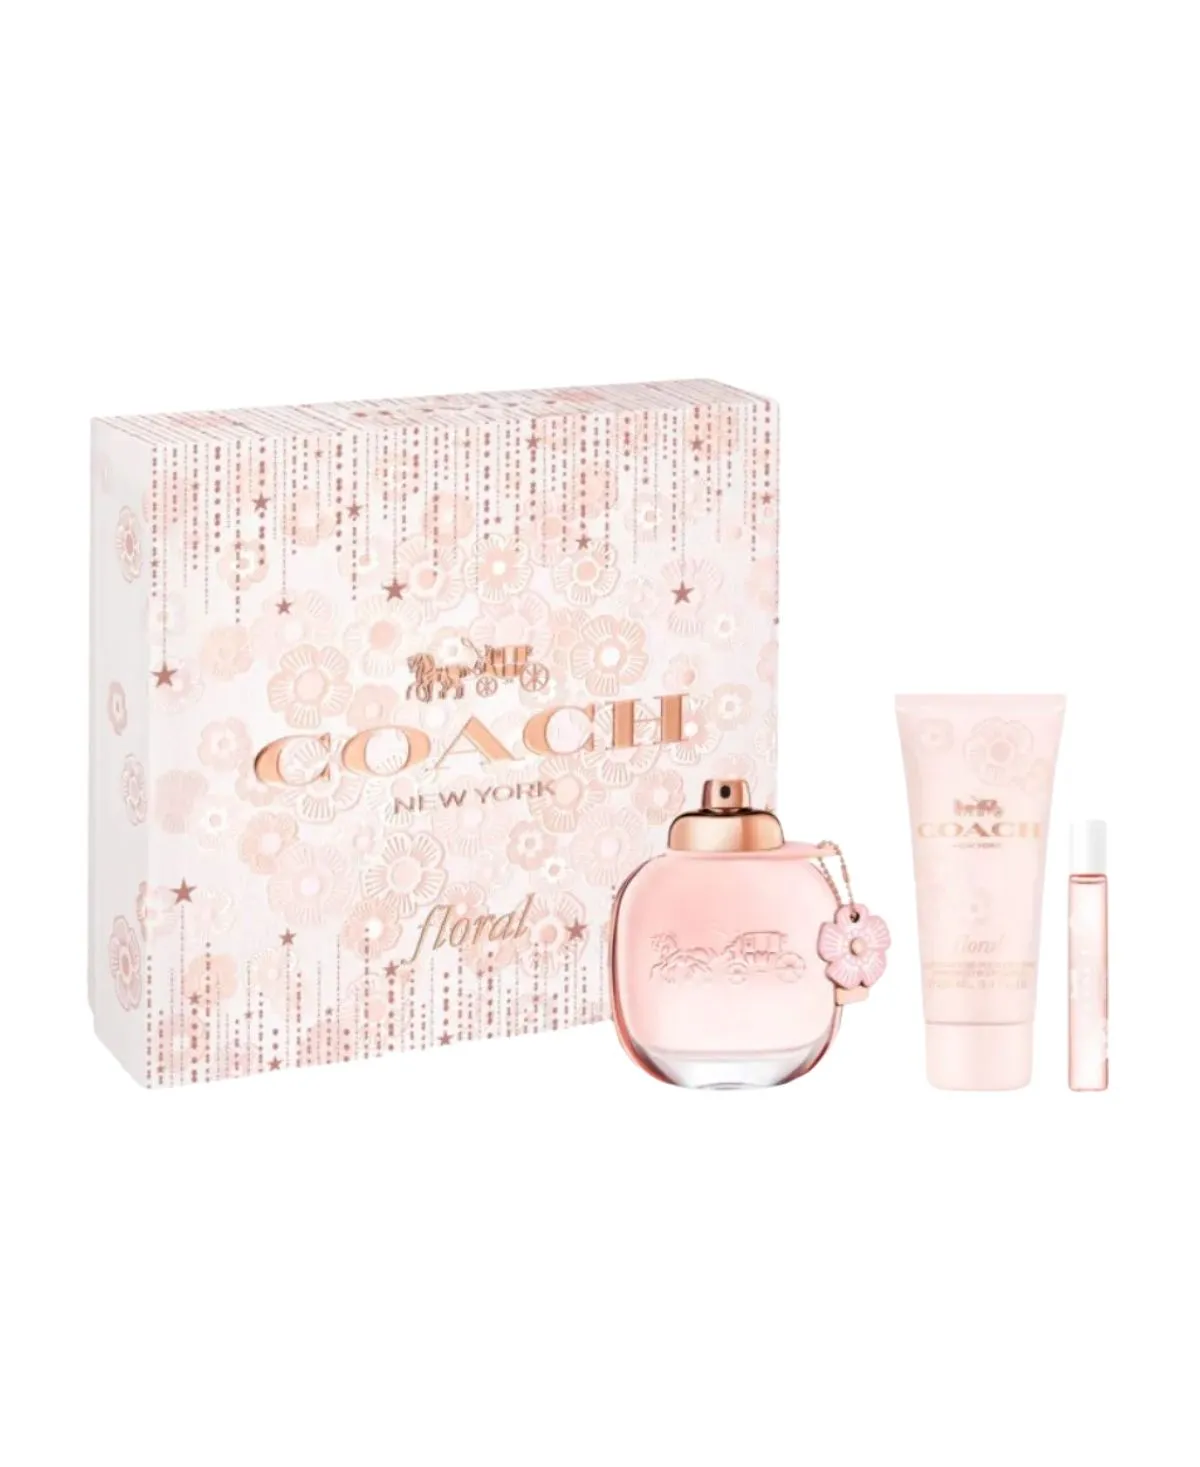 Coach Floral 3 pcs Gift Set for Women Eau de Parfum (EDP) Spray 3 oz (90 ml) 3386460138888